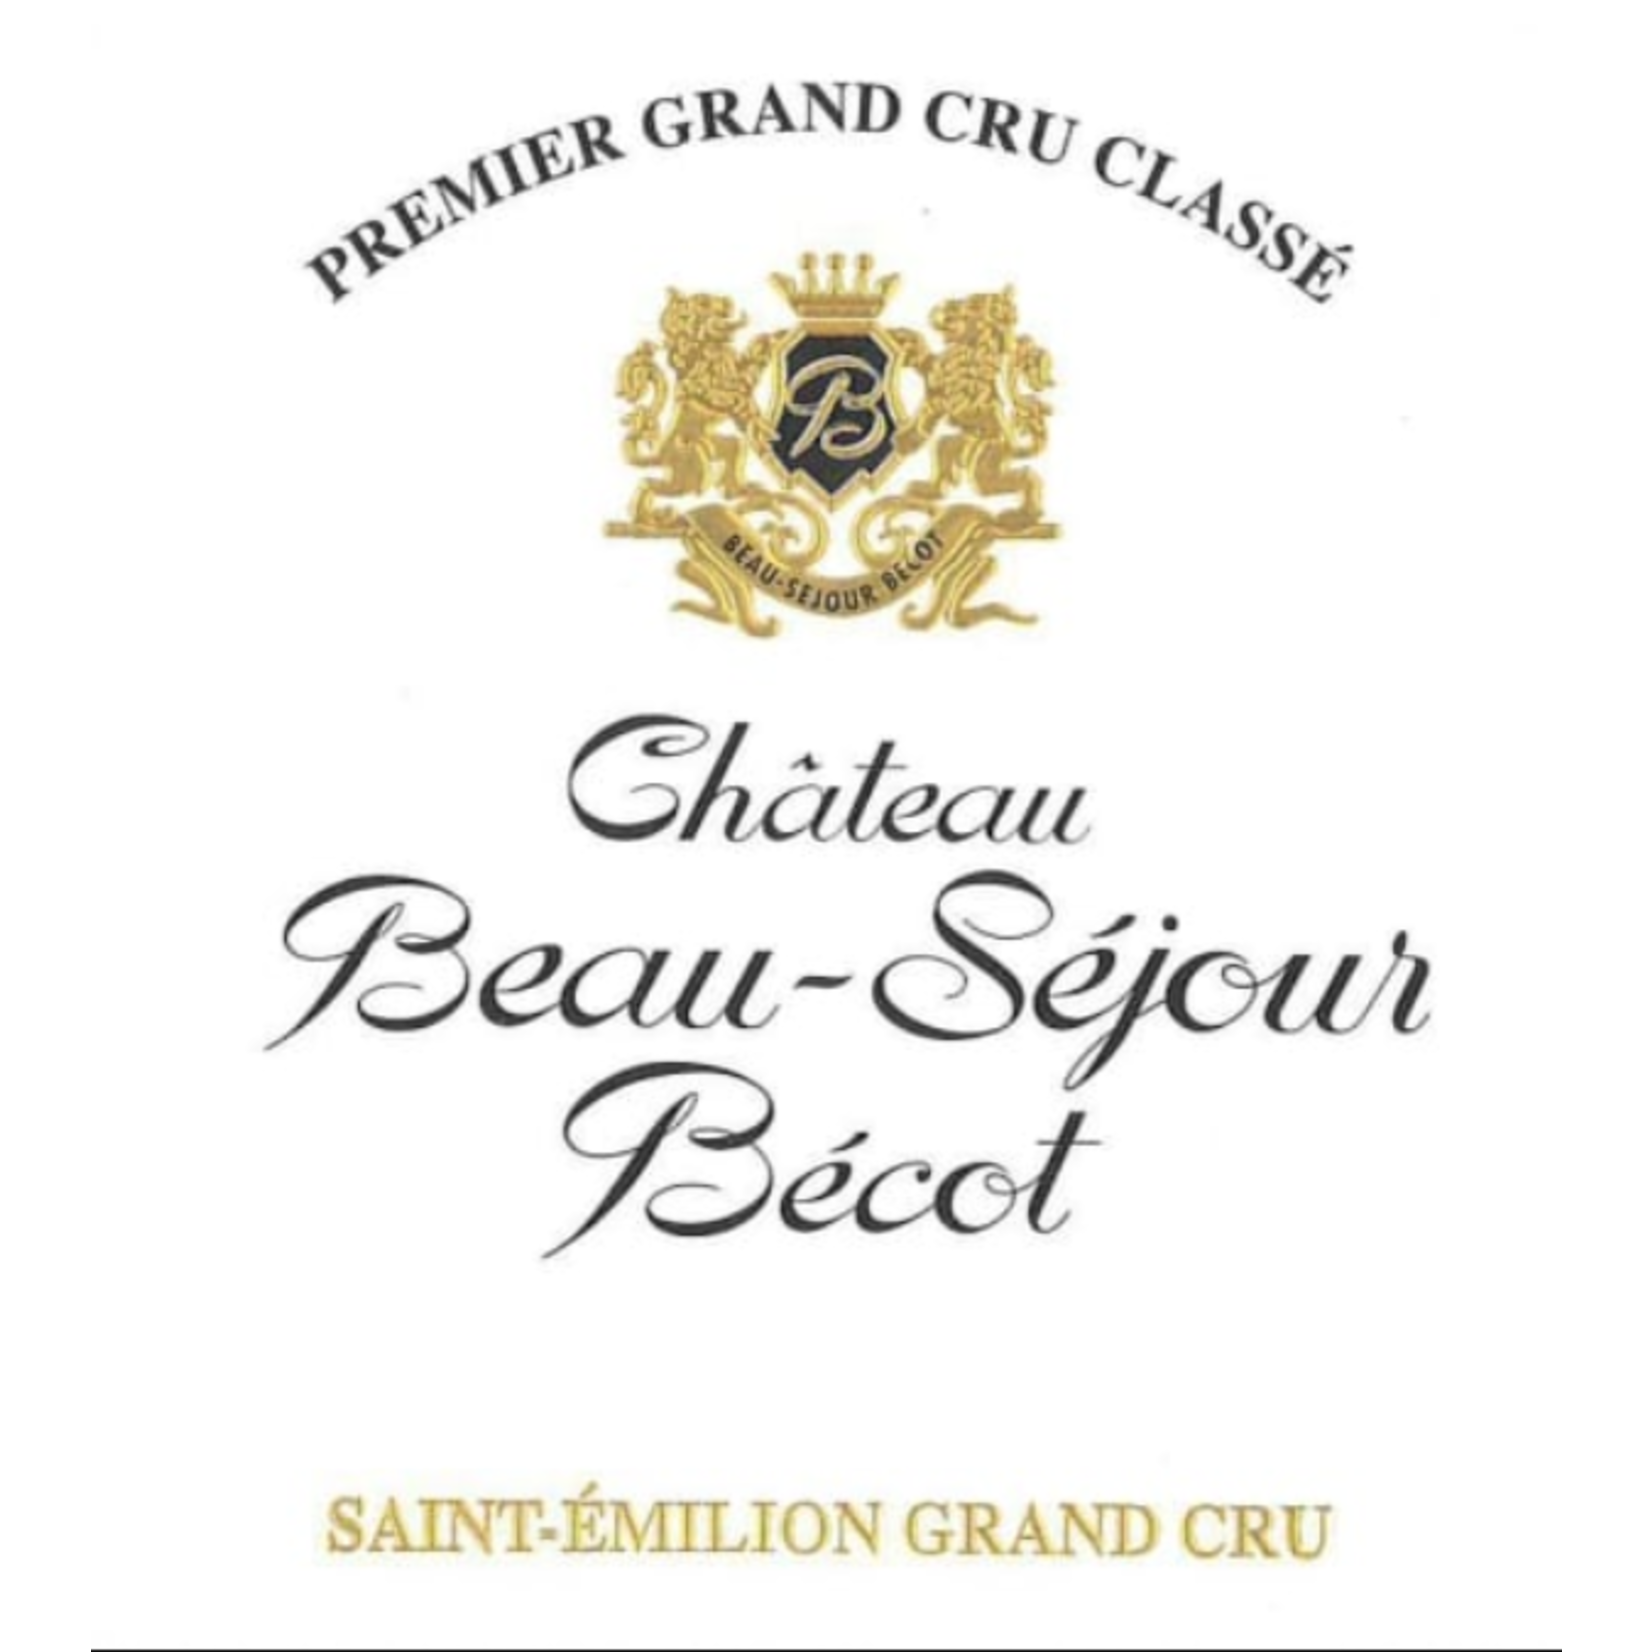 Château Beau-Séjour Bécot Saint-Emilion Grand Cru 2018  France